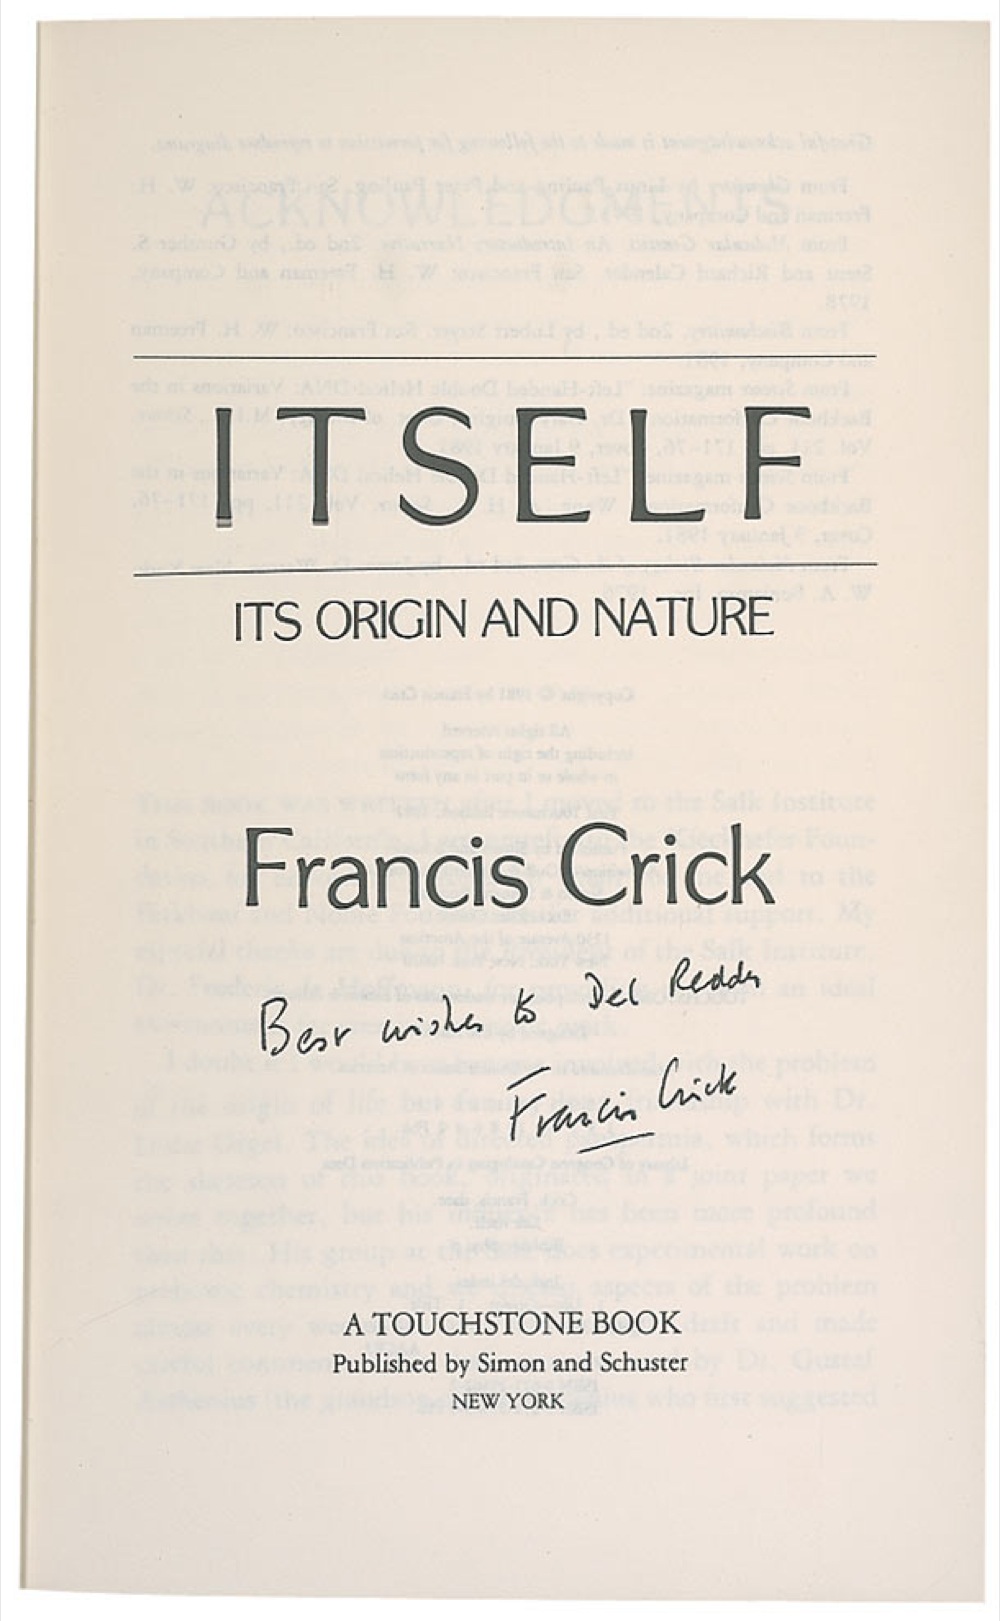 Lot #219 DNA: Francis Crick